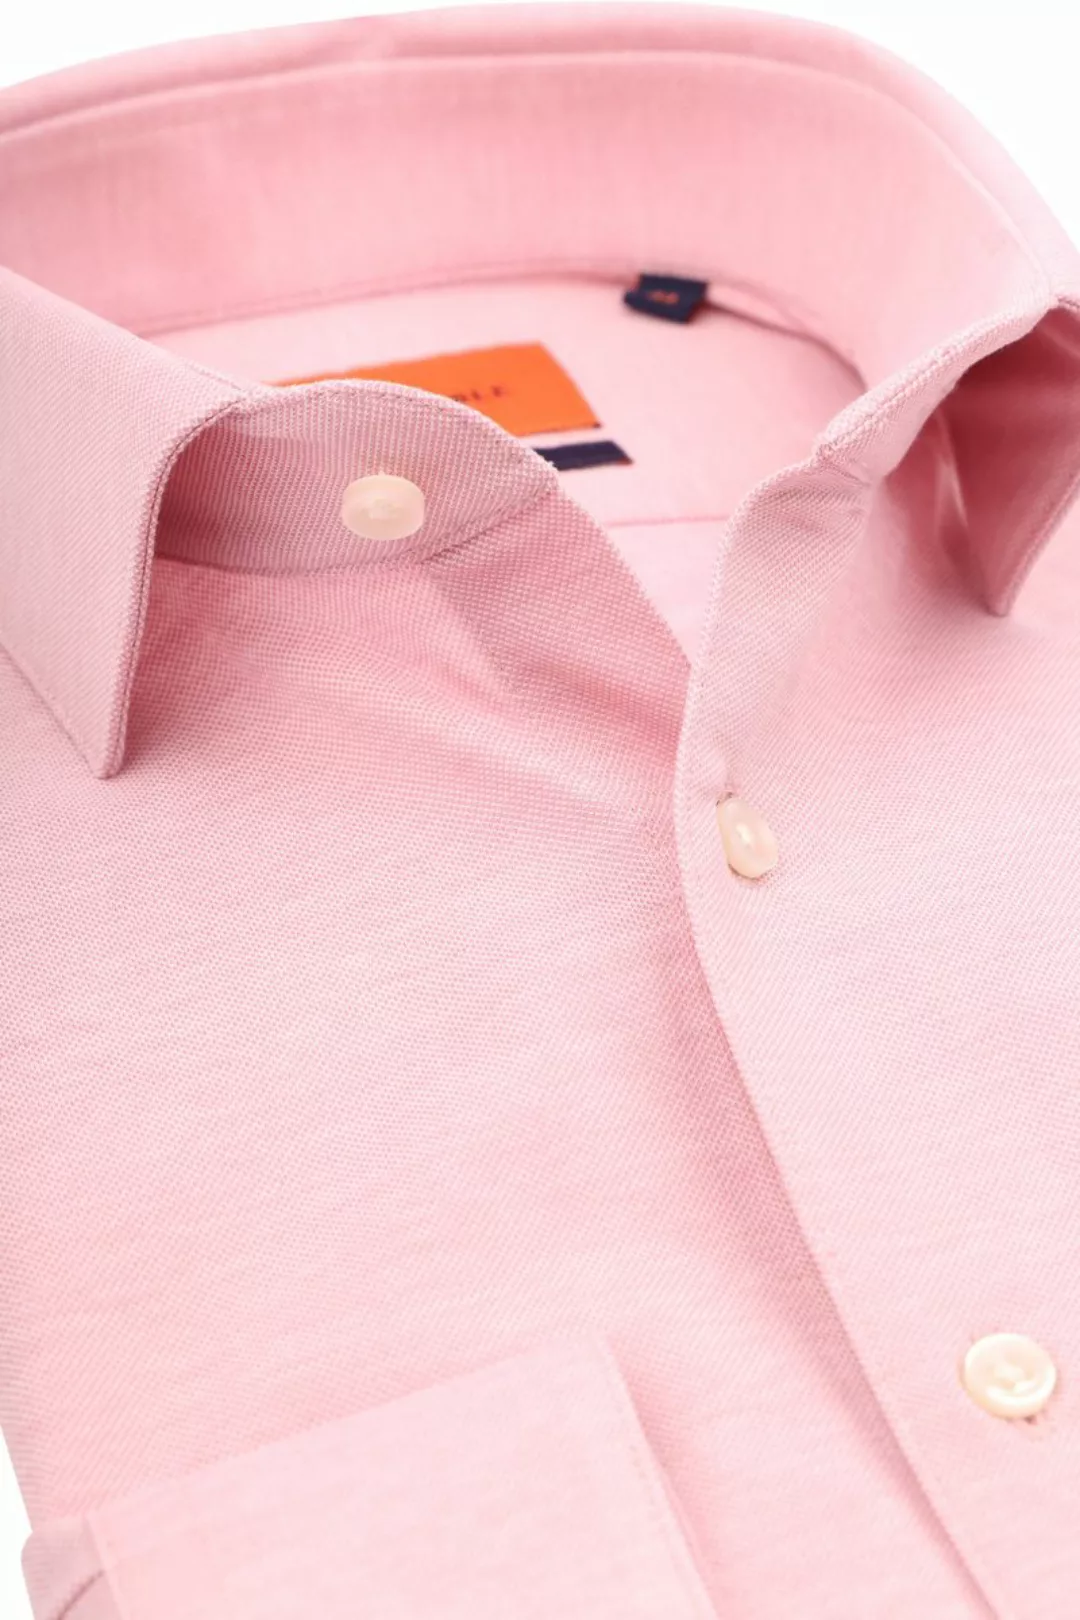 Suitable Hemd Knitted Pique Rosa - Größe 38 günstig online kaufen